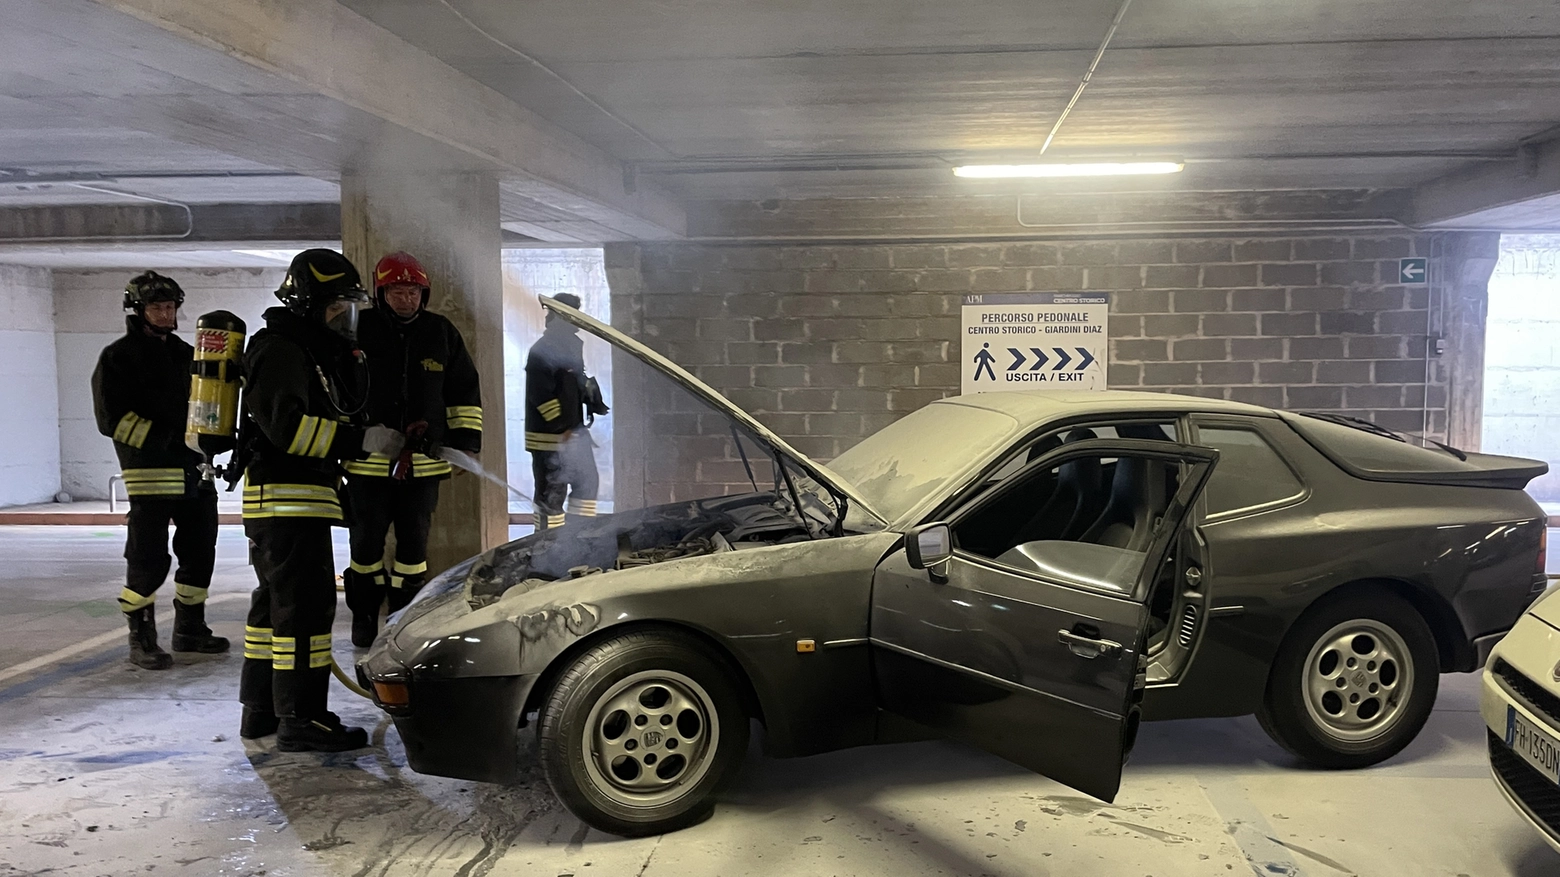 La Porsche andata a fuoco nel parcheggio (Calavita)